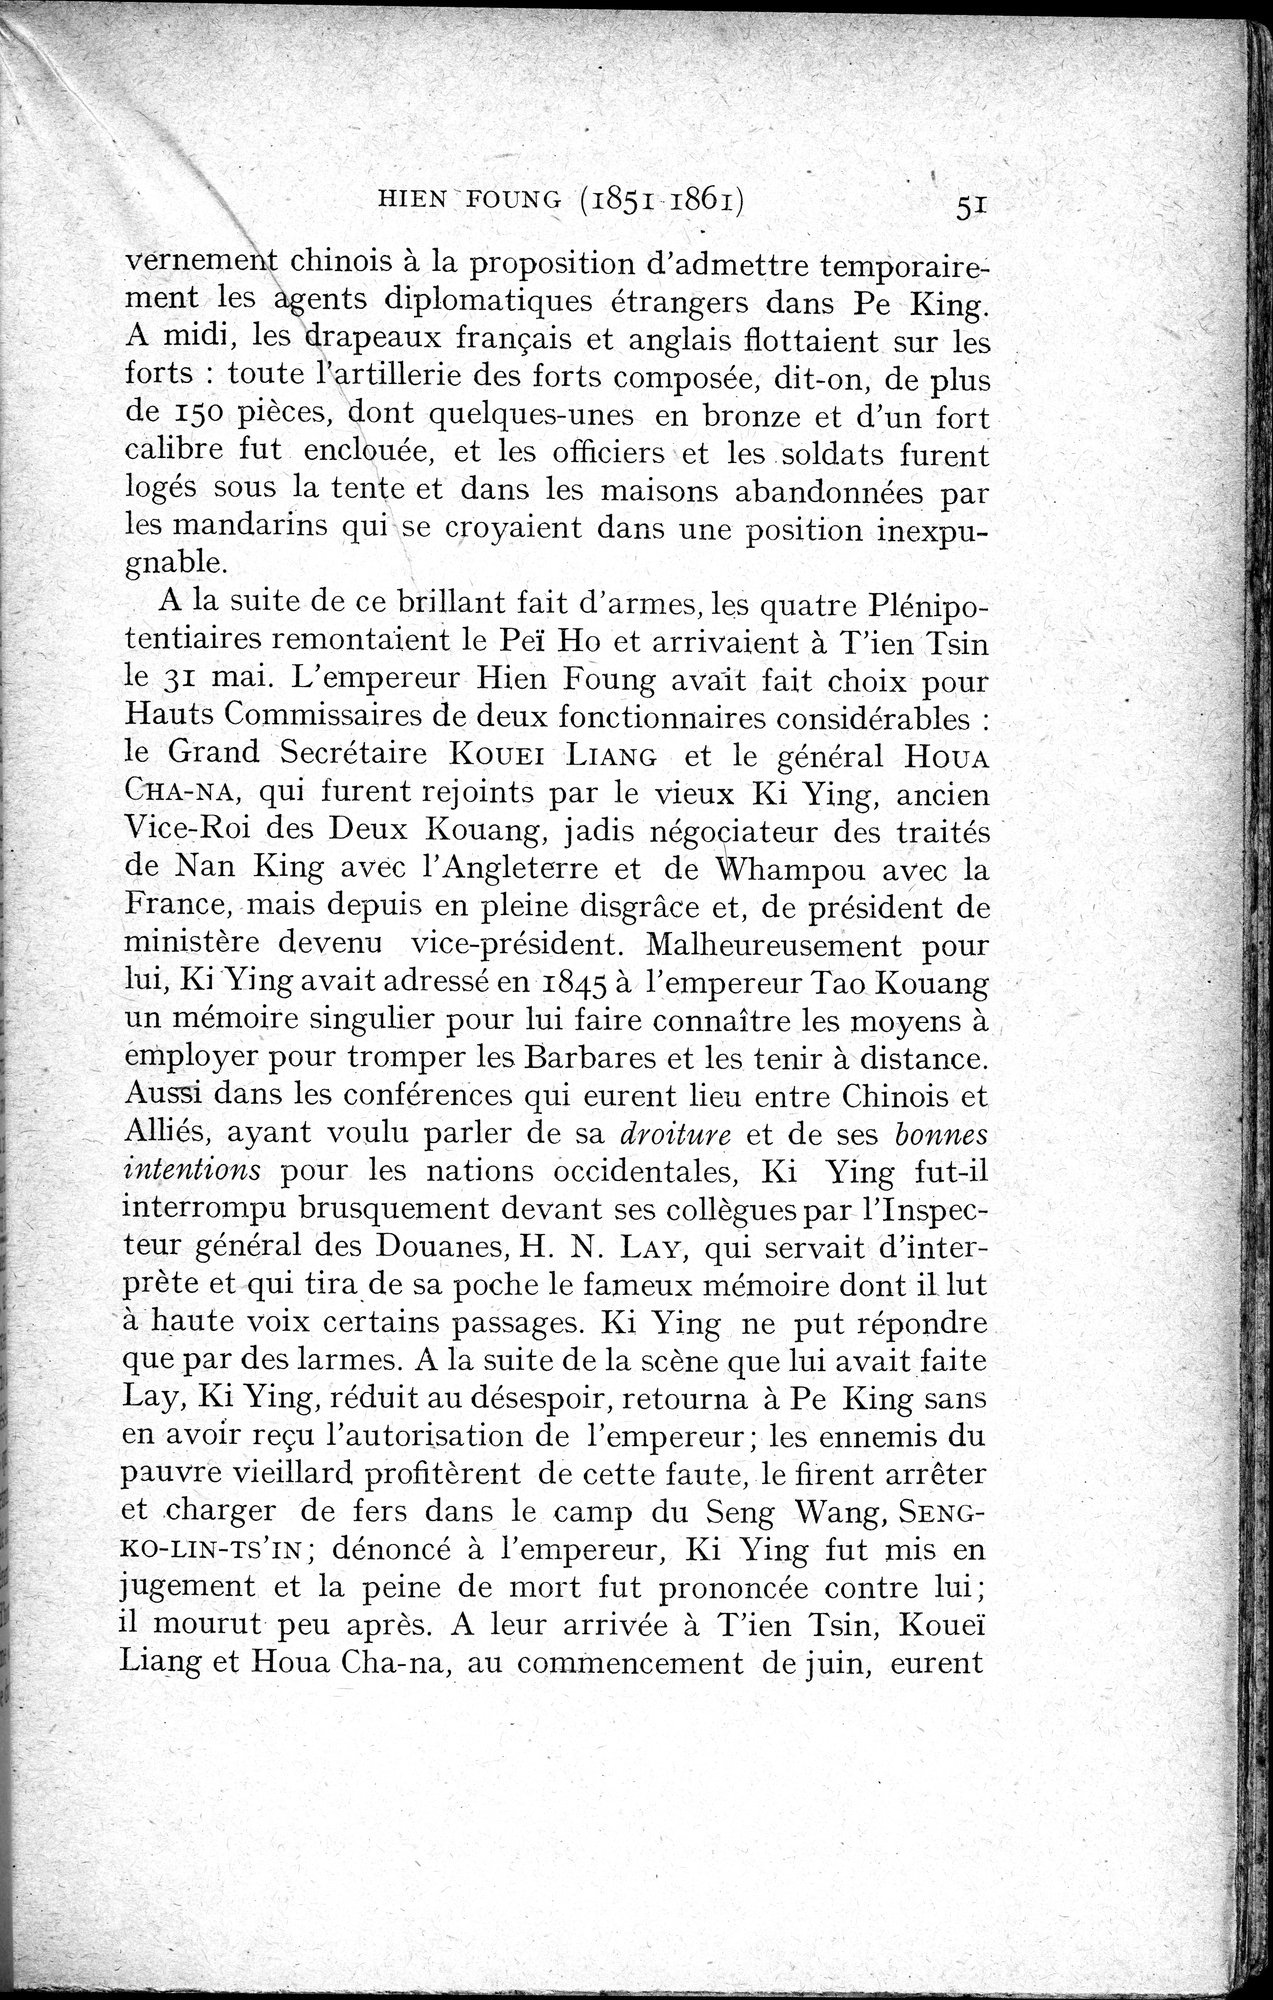 Histoire Générale de la Chine : vol.4 / Page 53 (Grayscale High Resolution Image)